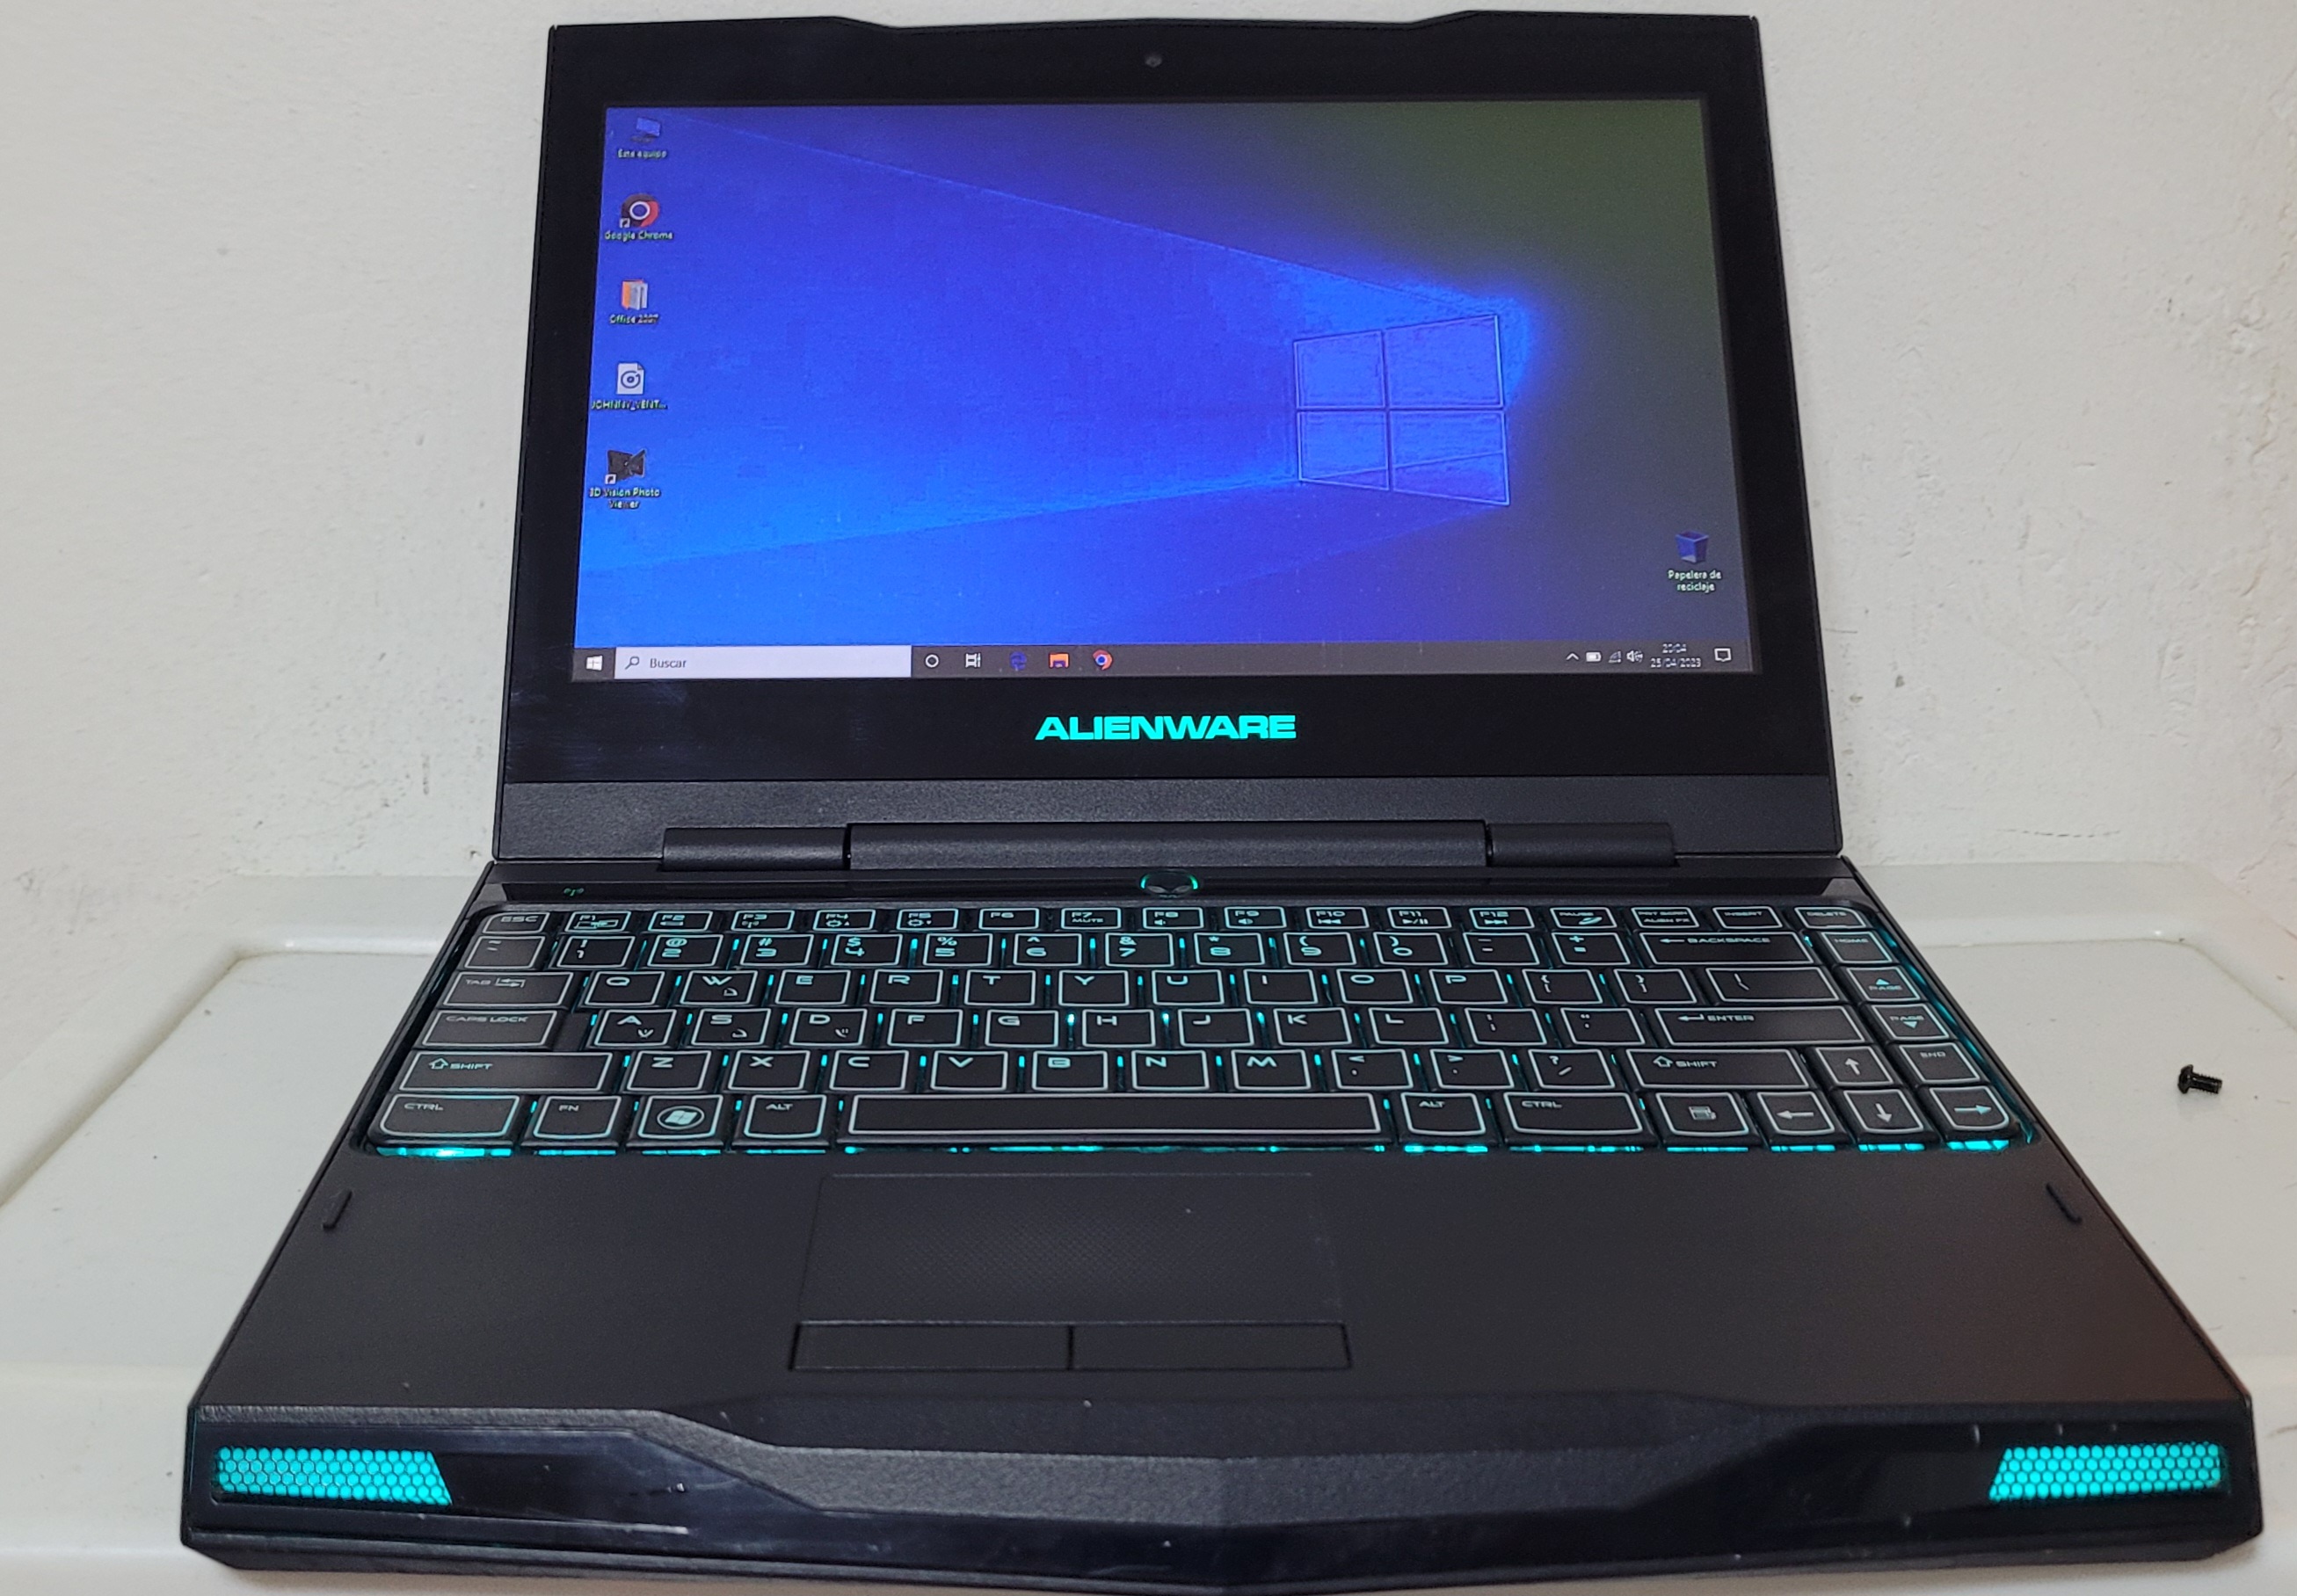 computadoras y laptops - AlienWare Gaming 13 Pulg Core i7 Ram 8gb Disco 128gb SSD Nvidea Gt 335 4gb